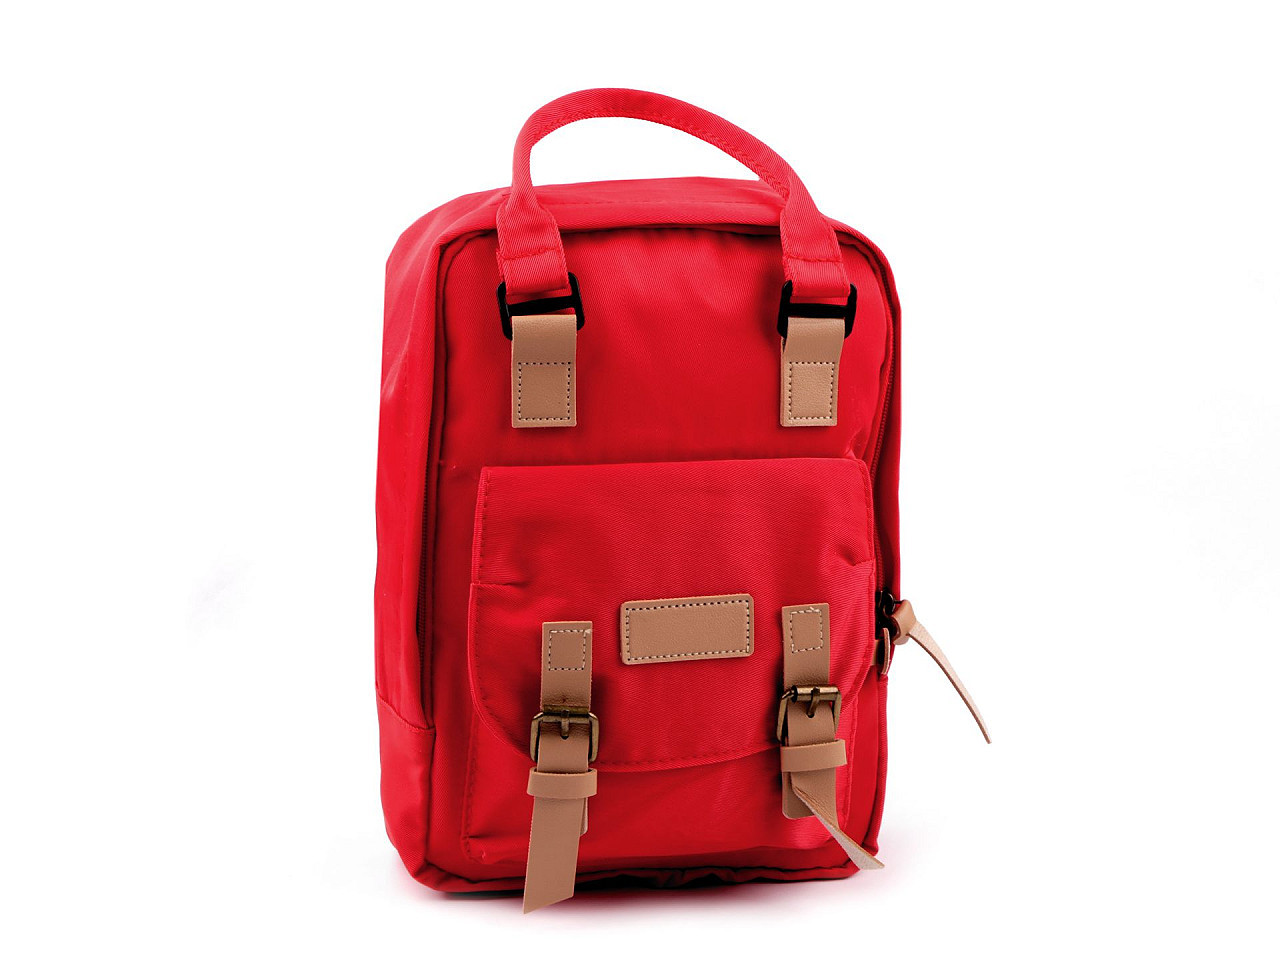 Batoh malý 25x33 cm, barva 3 červená